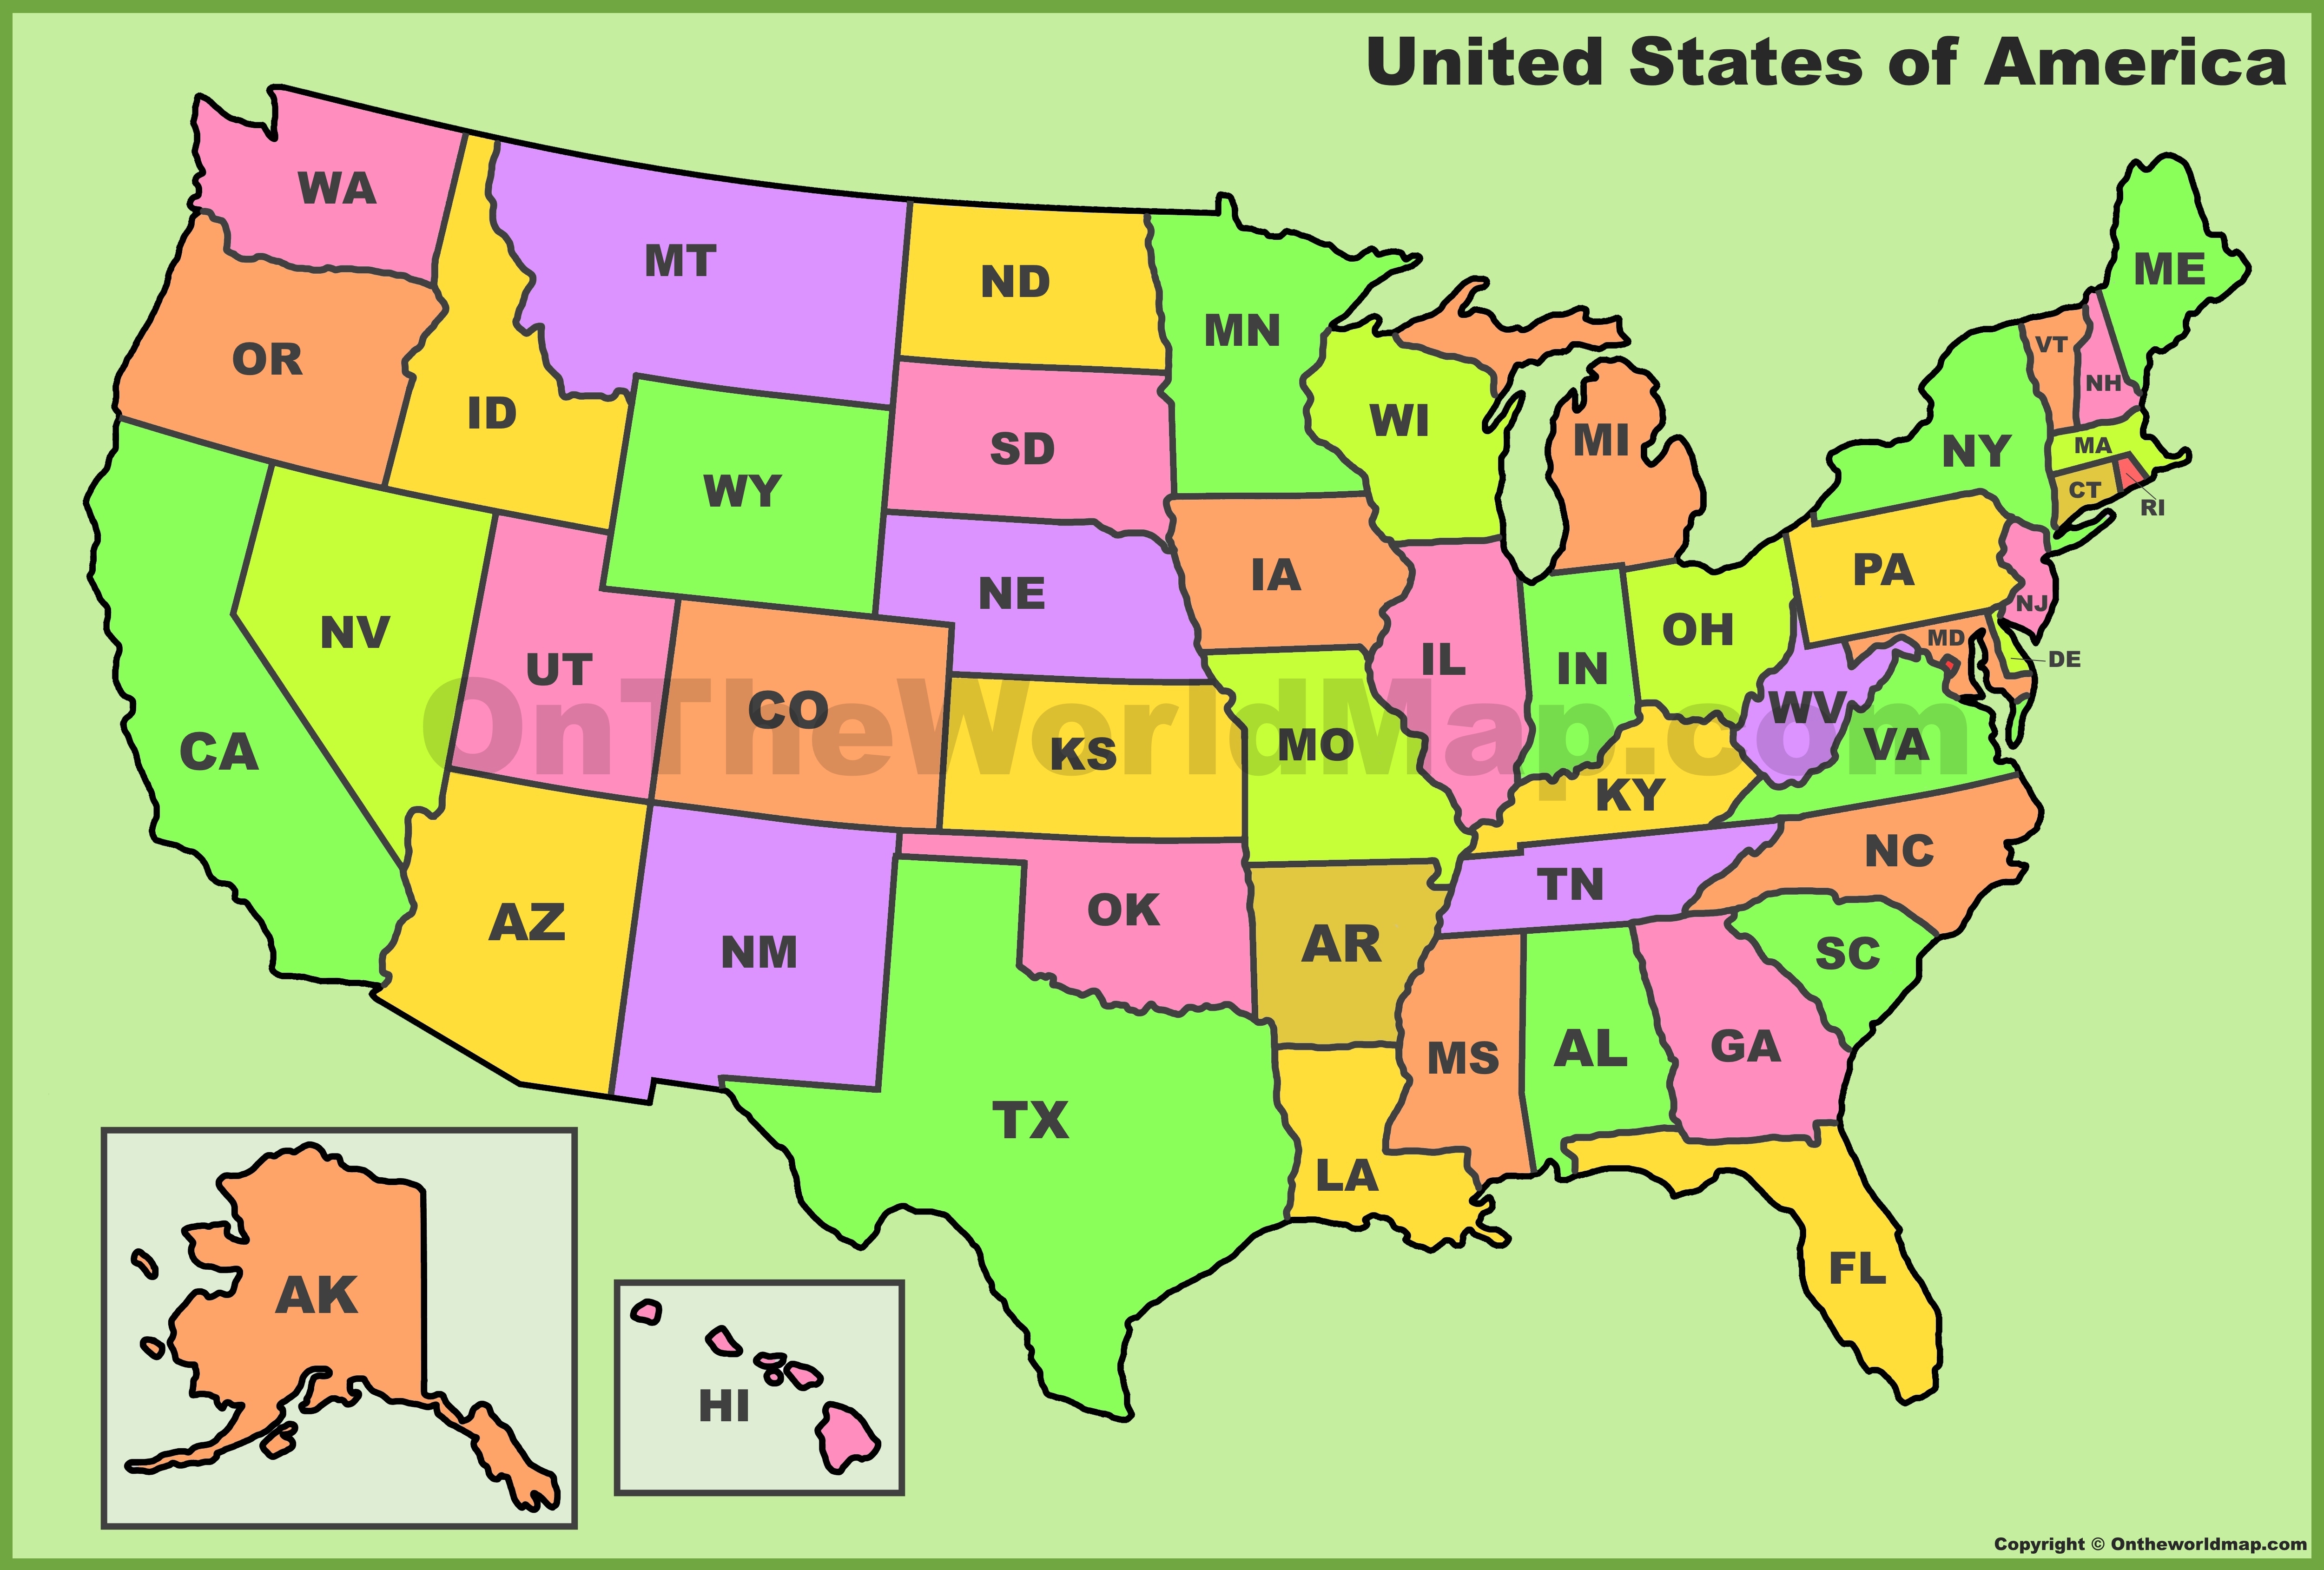 U.S. State Abbreviations Map